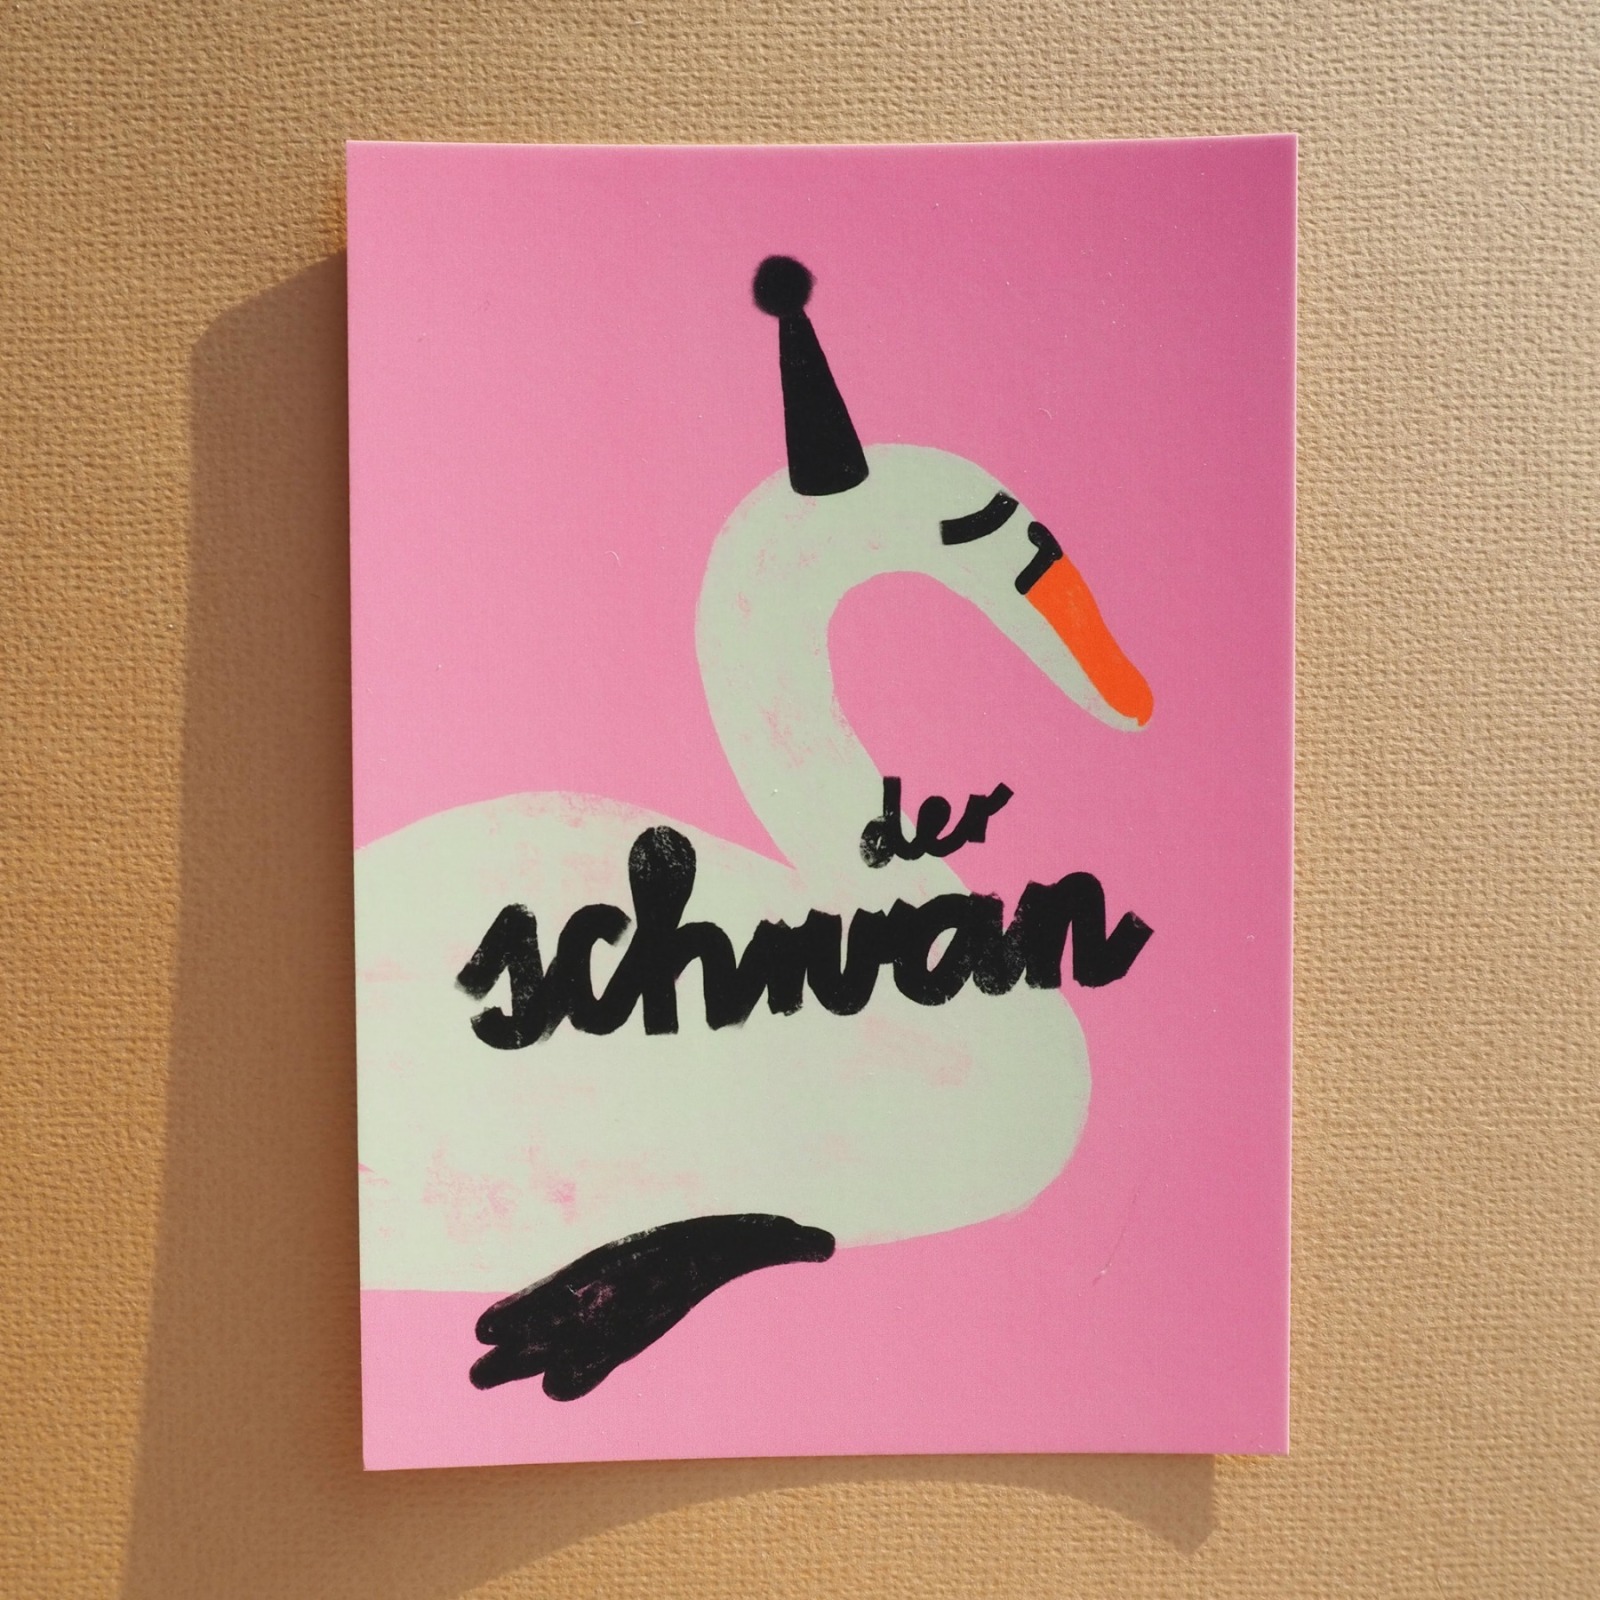 Postkarte Der Schwan Framboise und Ketchunp